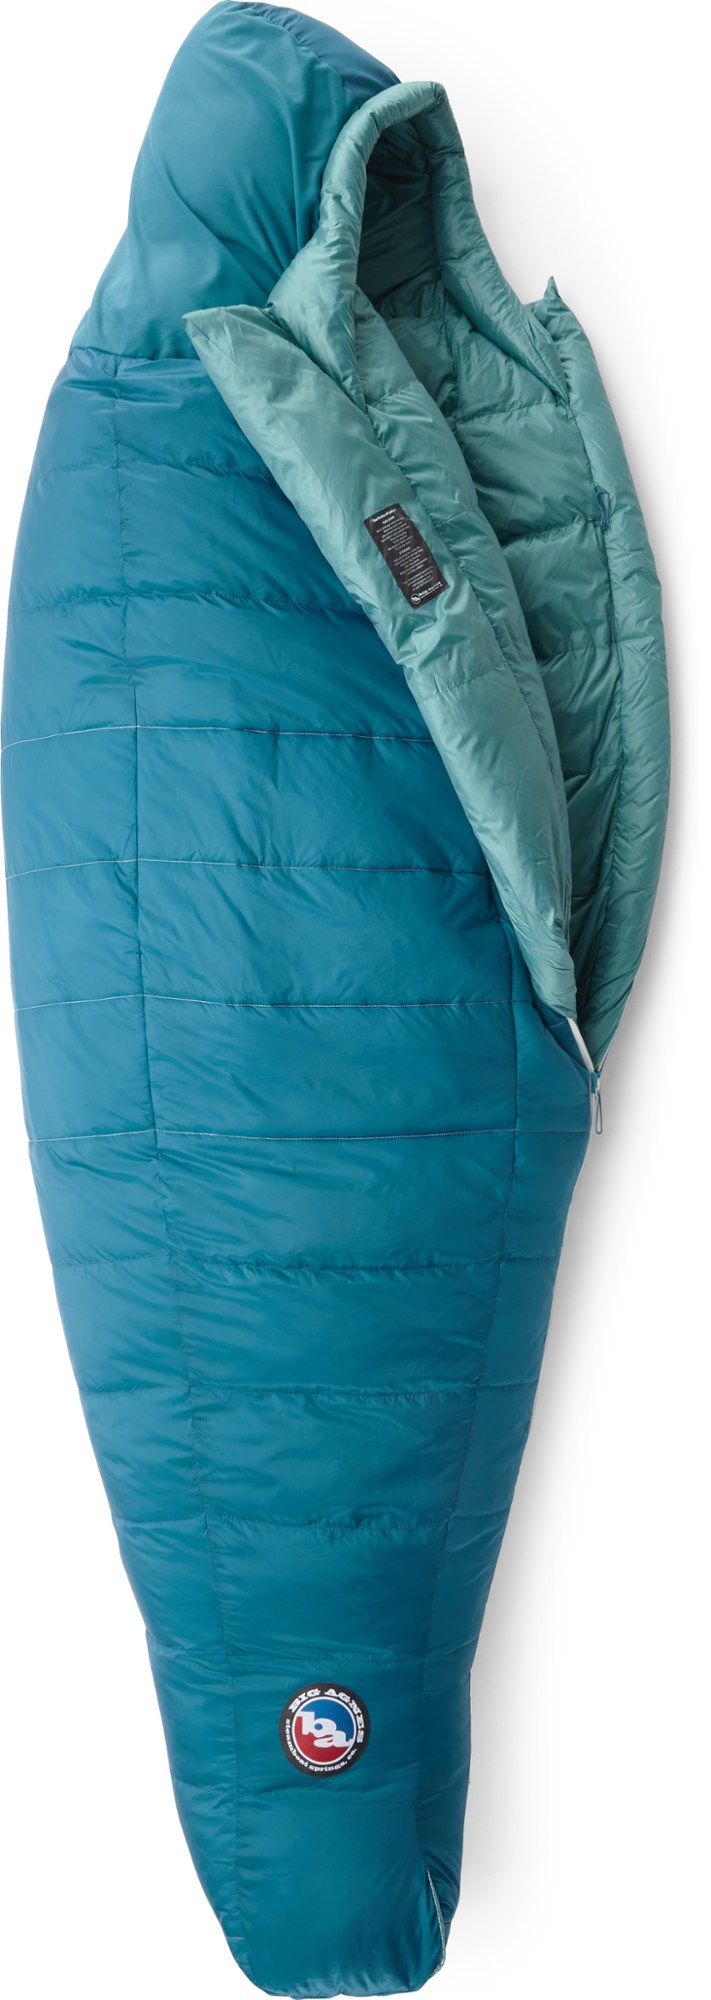 спальный мешок echo park 0 big agnes зеленый Спальный мешок Sidewinder SL 20 — женский Big Agnes, синий